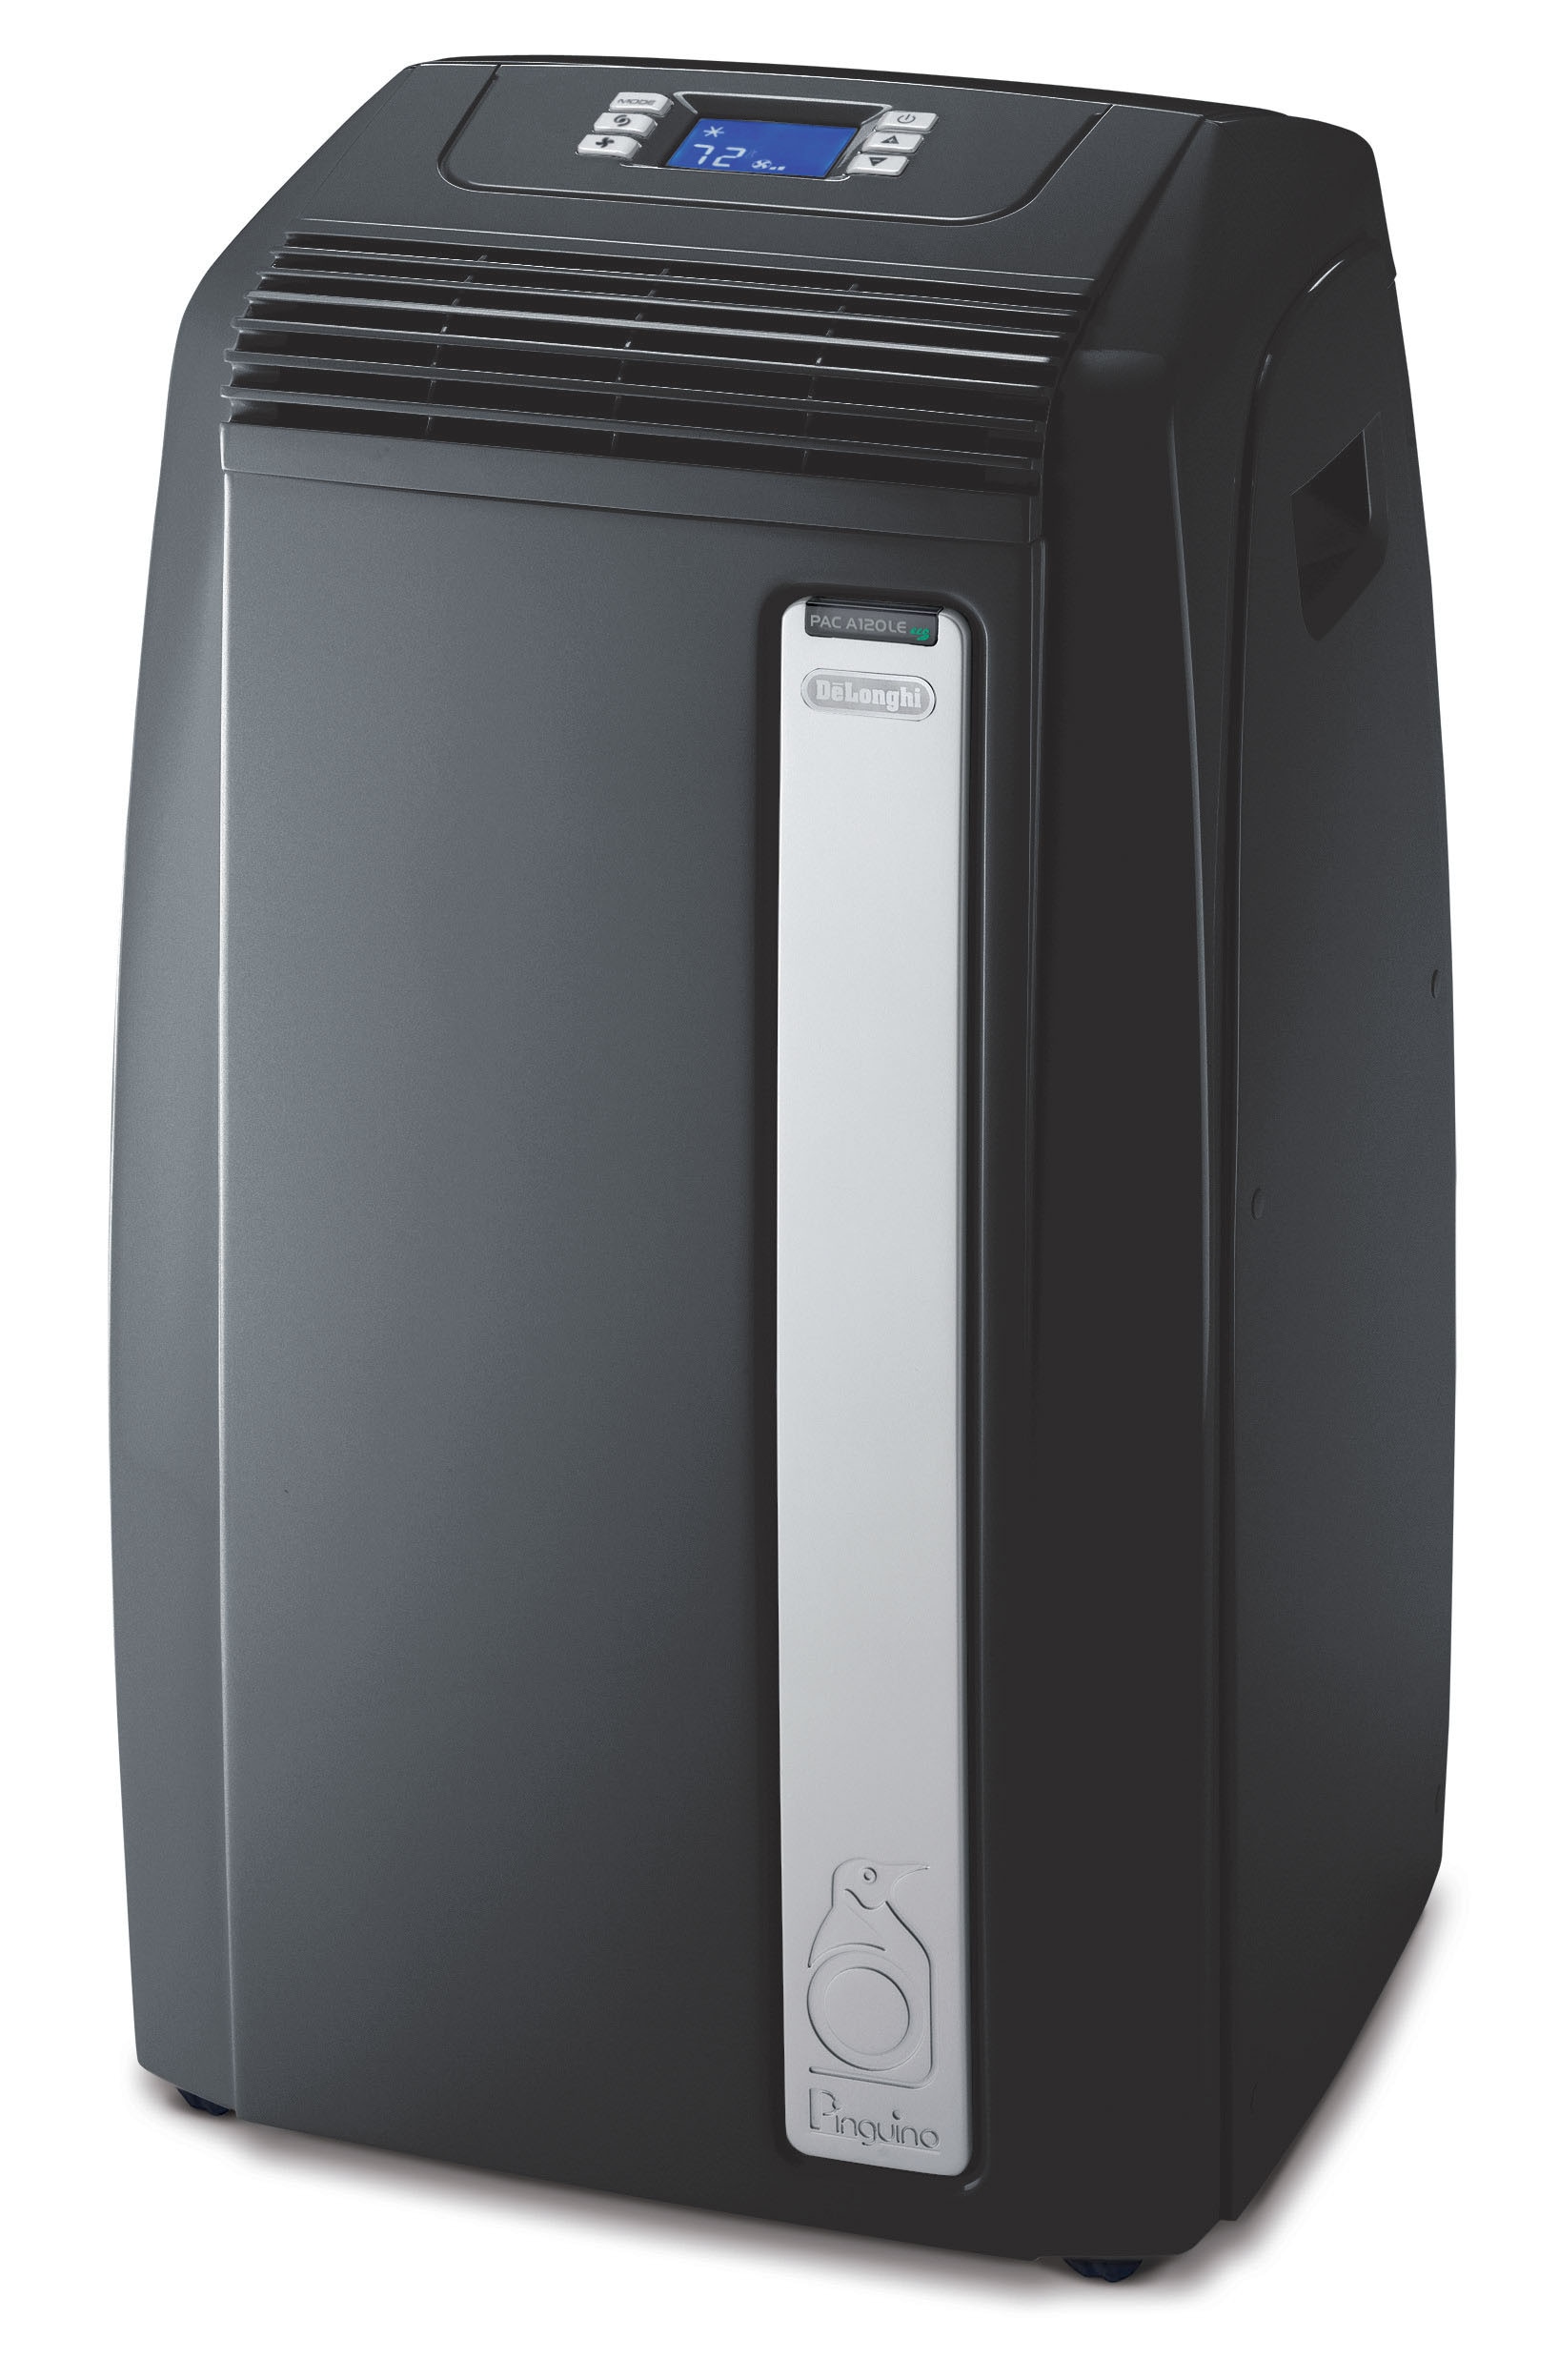 Black + Decker Portable AC Unit - appliances - by owner - sale